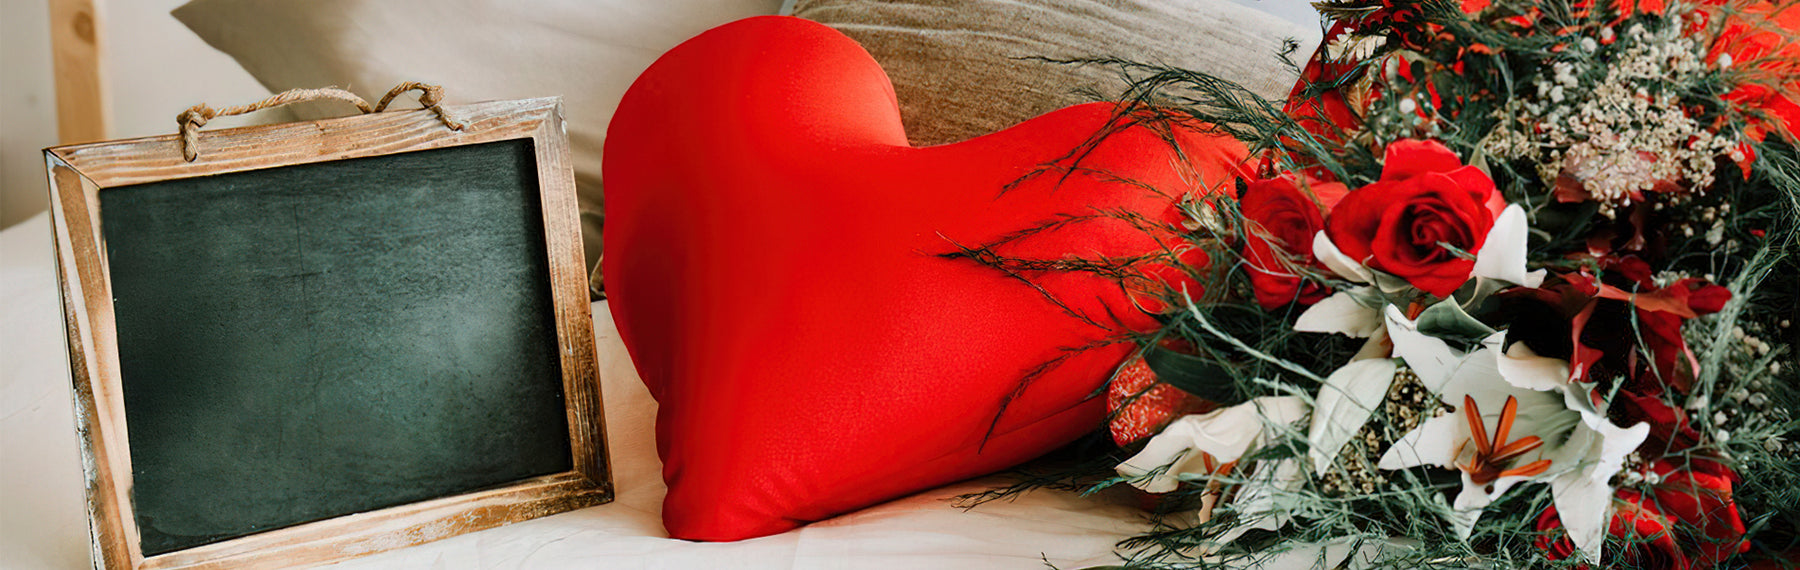 Valentin-nap: a szerelem és a kényelem ünnepe